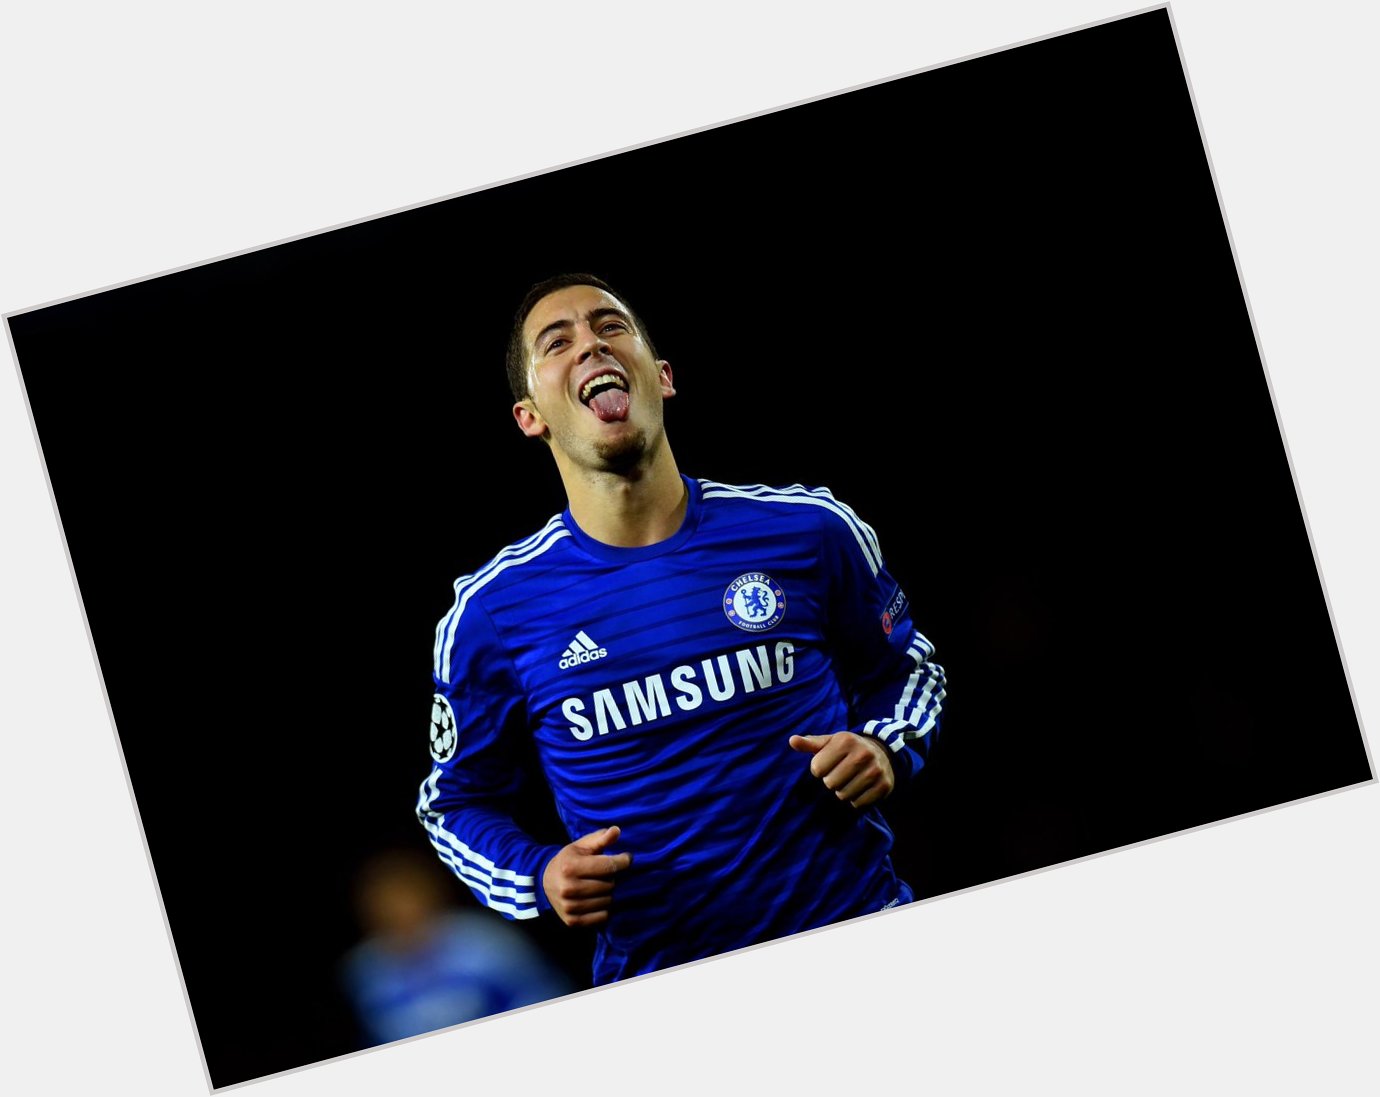 Happy birthday untuk pemain yang tak ada duanya, Eden Hazard! Umurnya 24 tahun hari ini. 